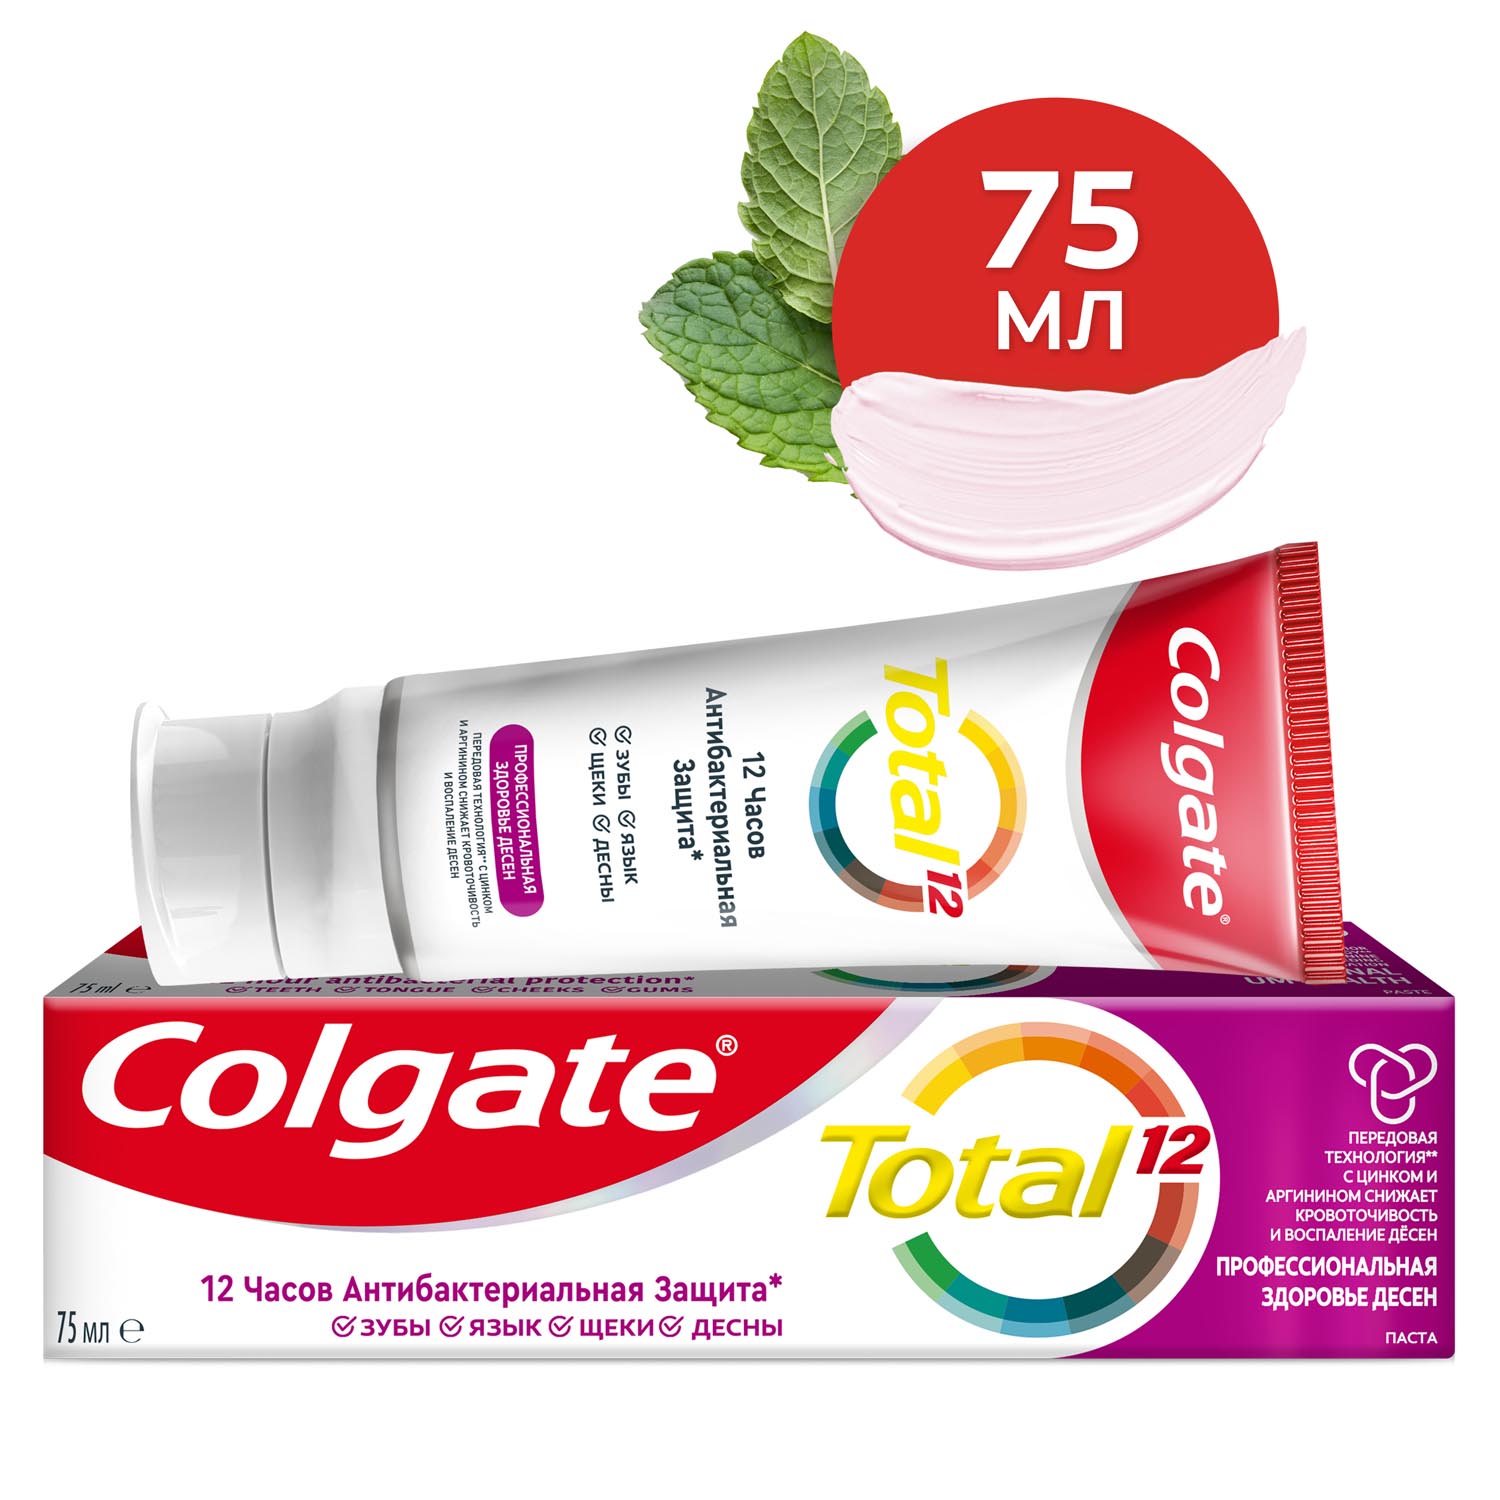 Зубная паста Colgate Total 12 Профессиональная Здоровье Десен с цинком и аргинином для улучшения здоровья десен и борьбы с их кровоточивостью, а также с антибактериальной защитой всей полости рта в течение 12 часов, 75 мл